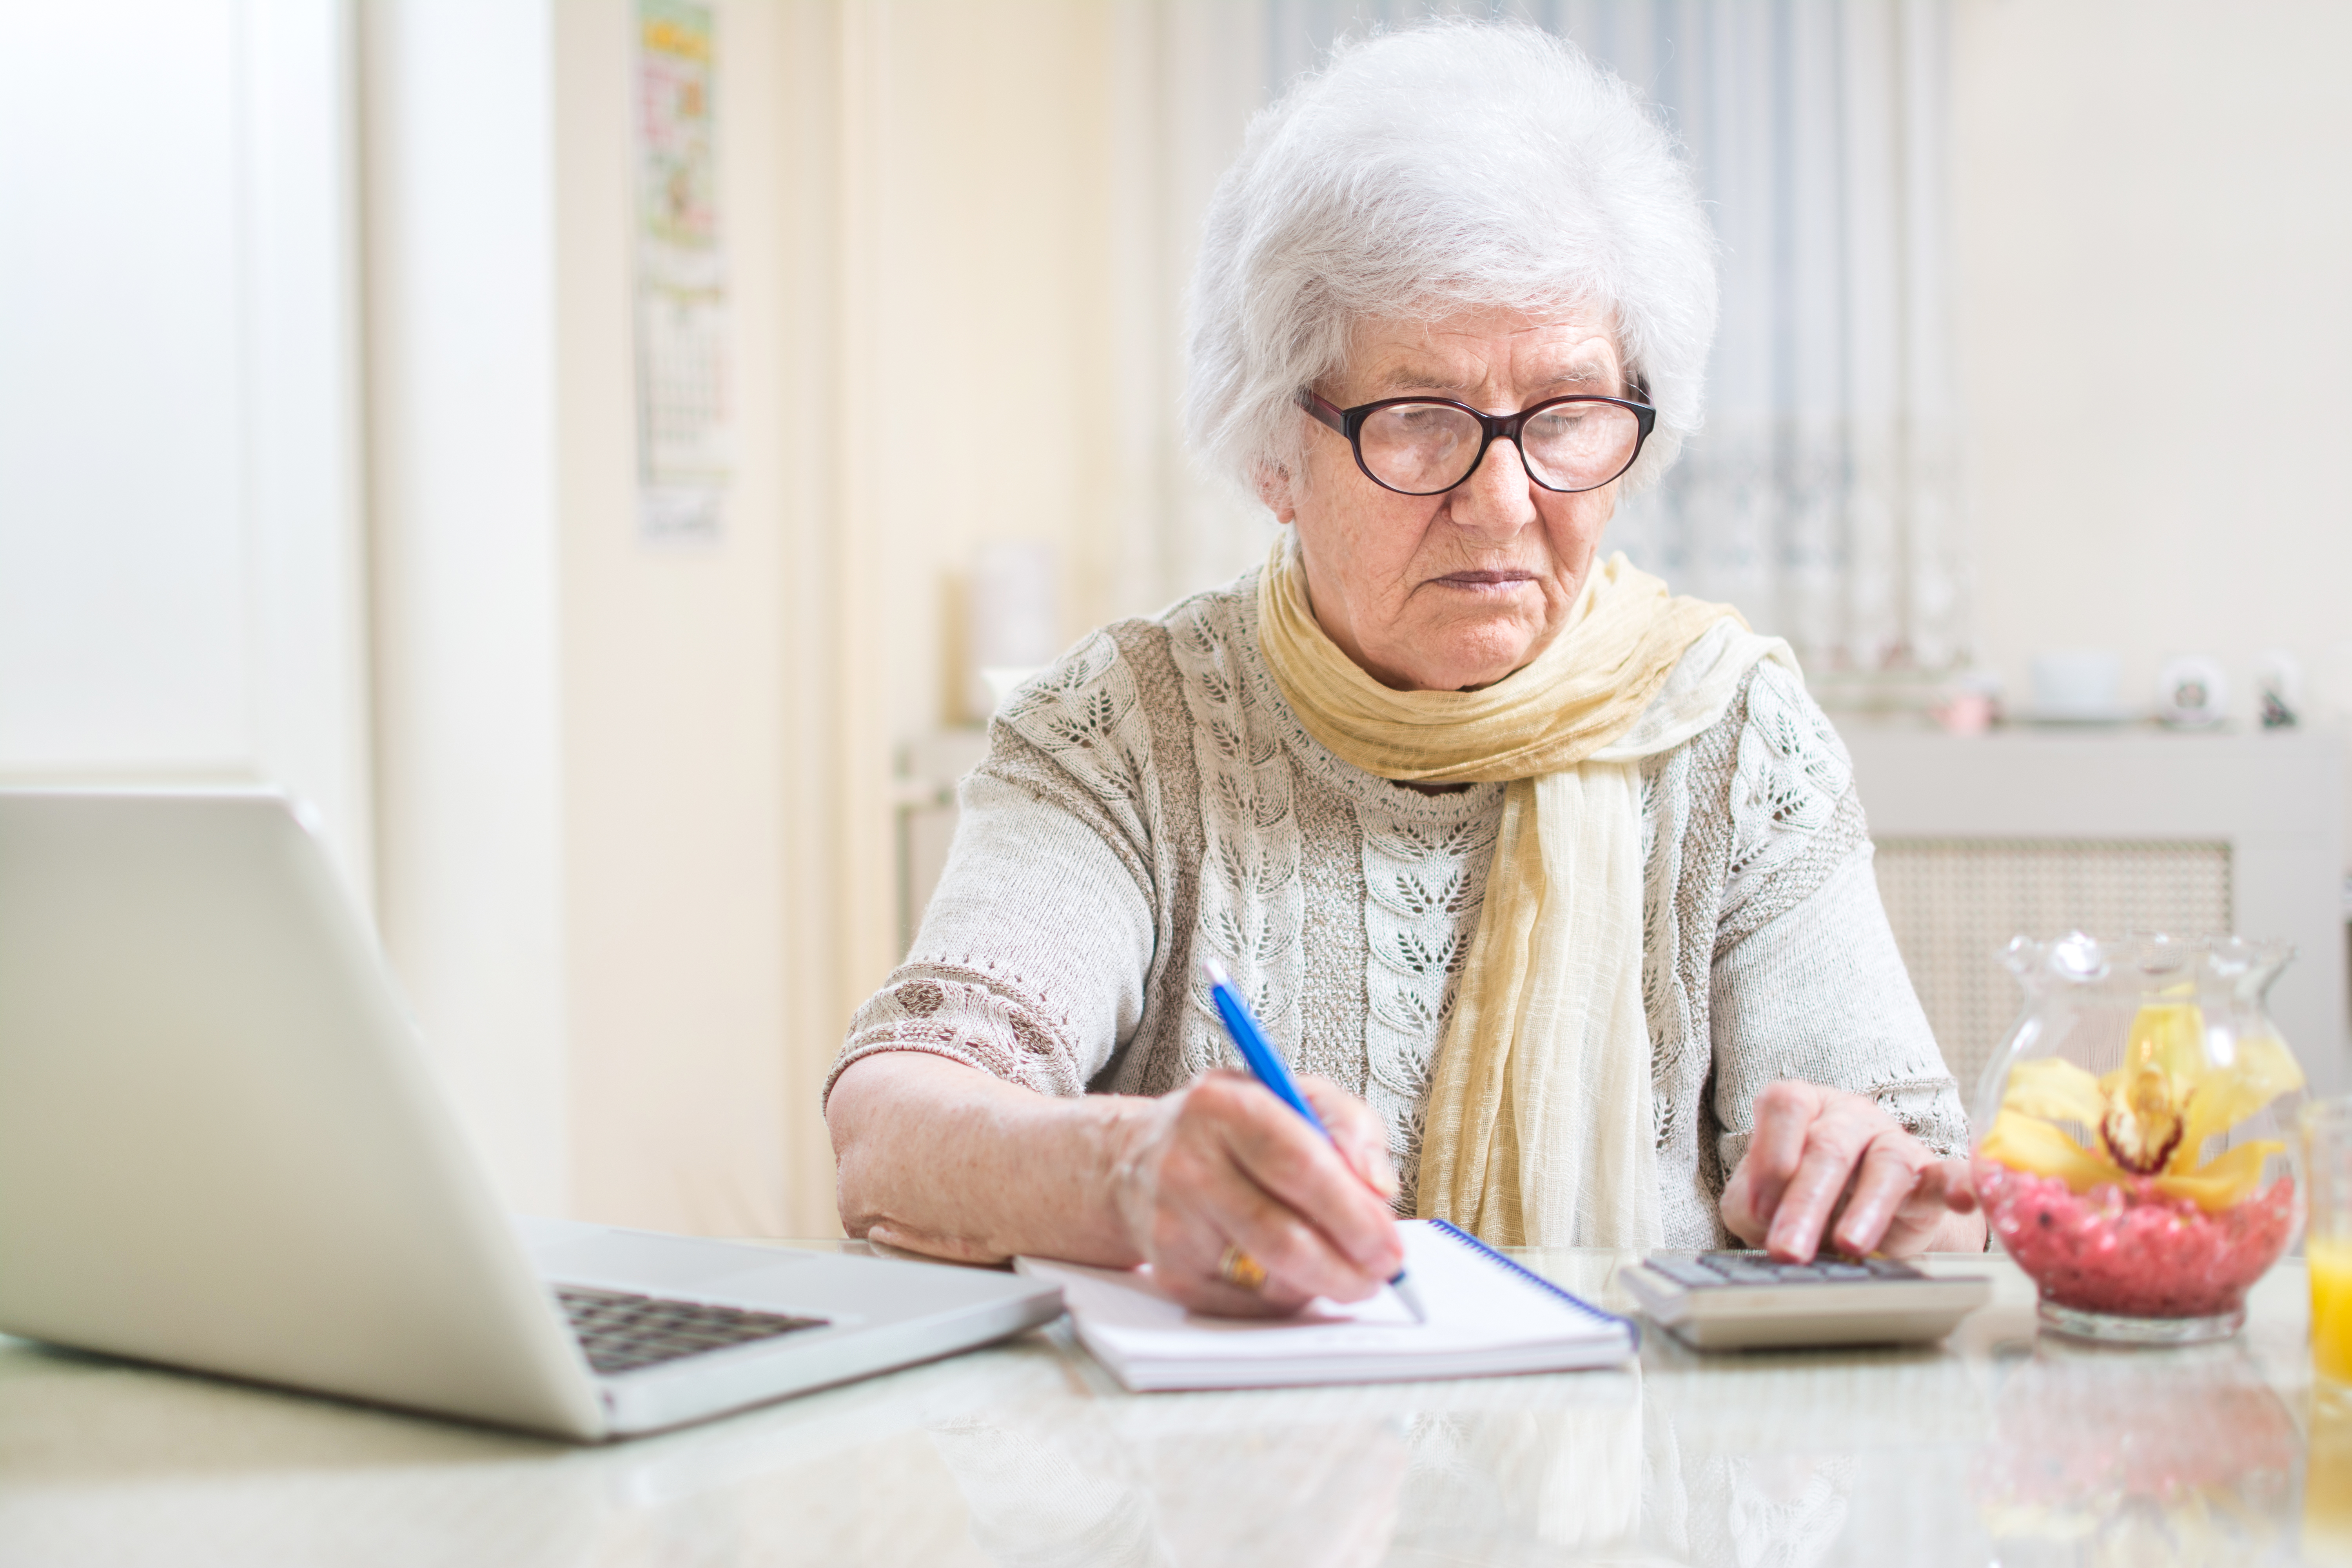 Jak obniżenie wieku emerytalnego wpływa na wysokość emerytur kobiet?